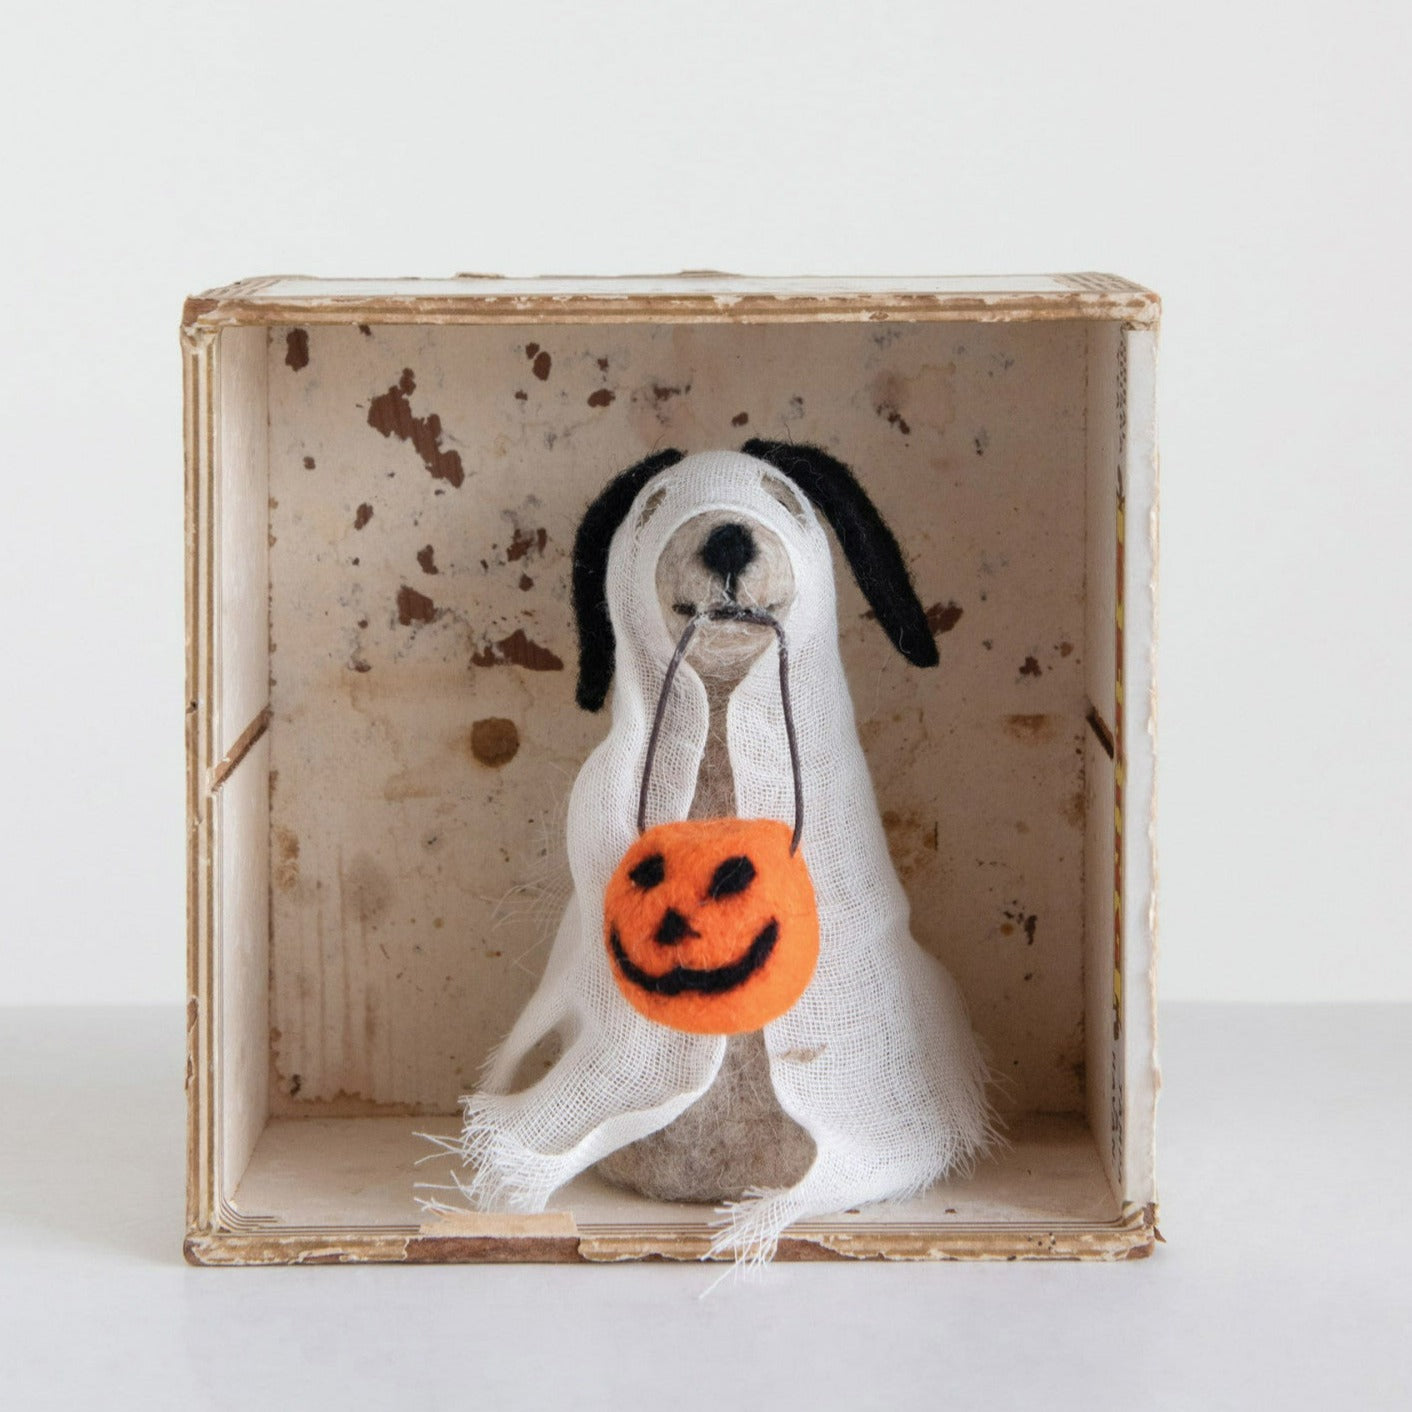 Wool Felt Dog in Ghost Costume 5"L x 3.5"W x 5"H